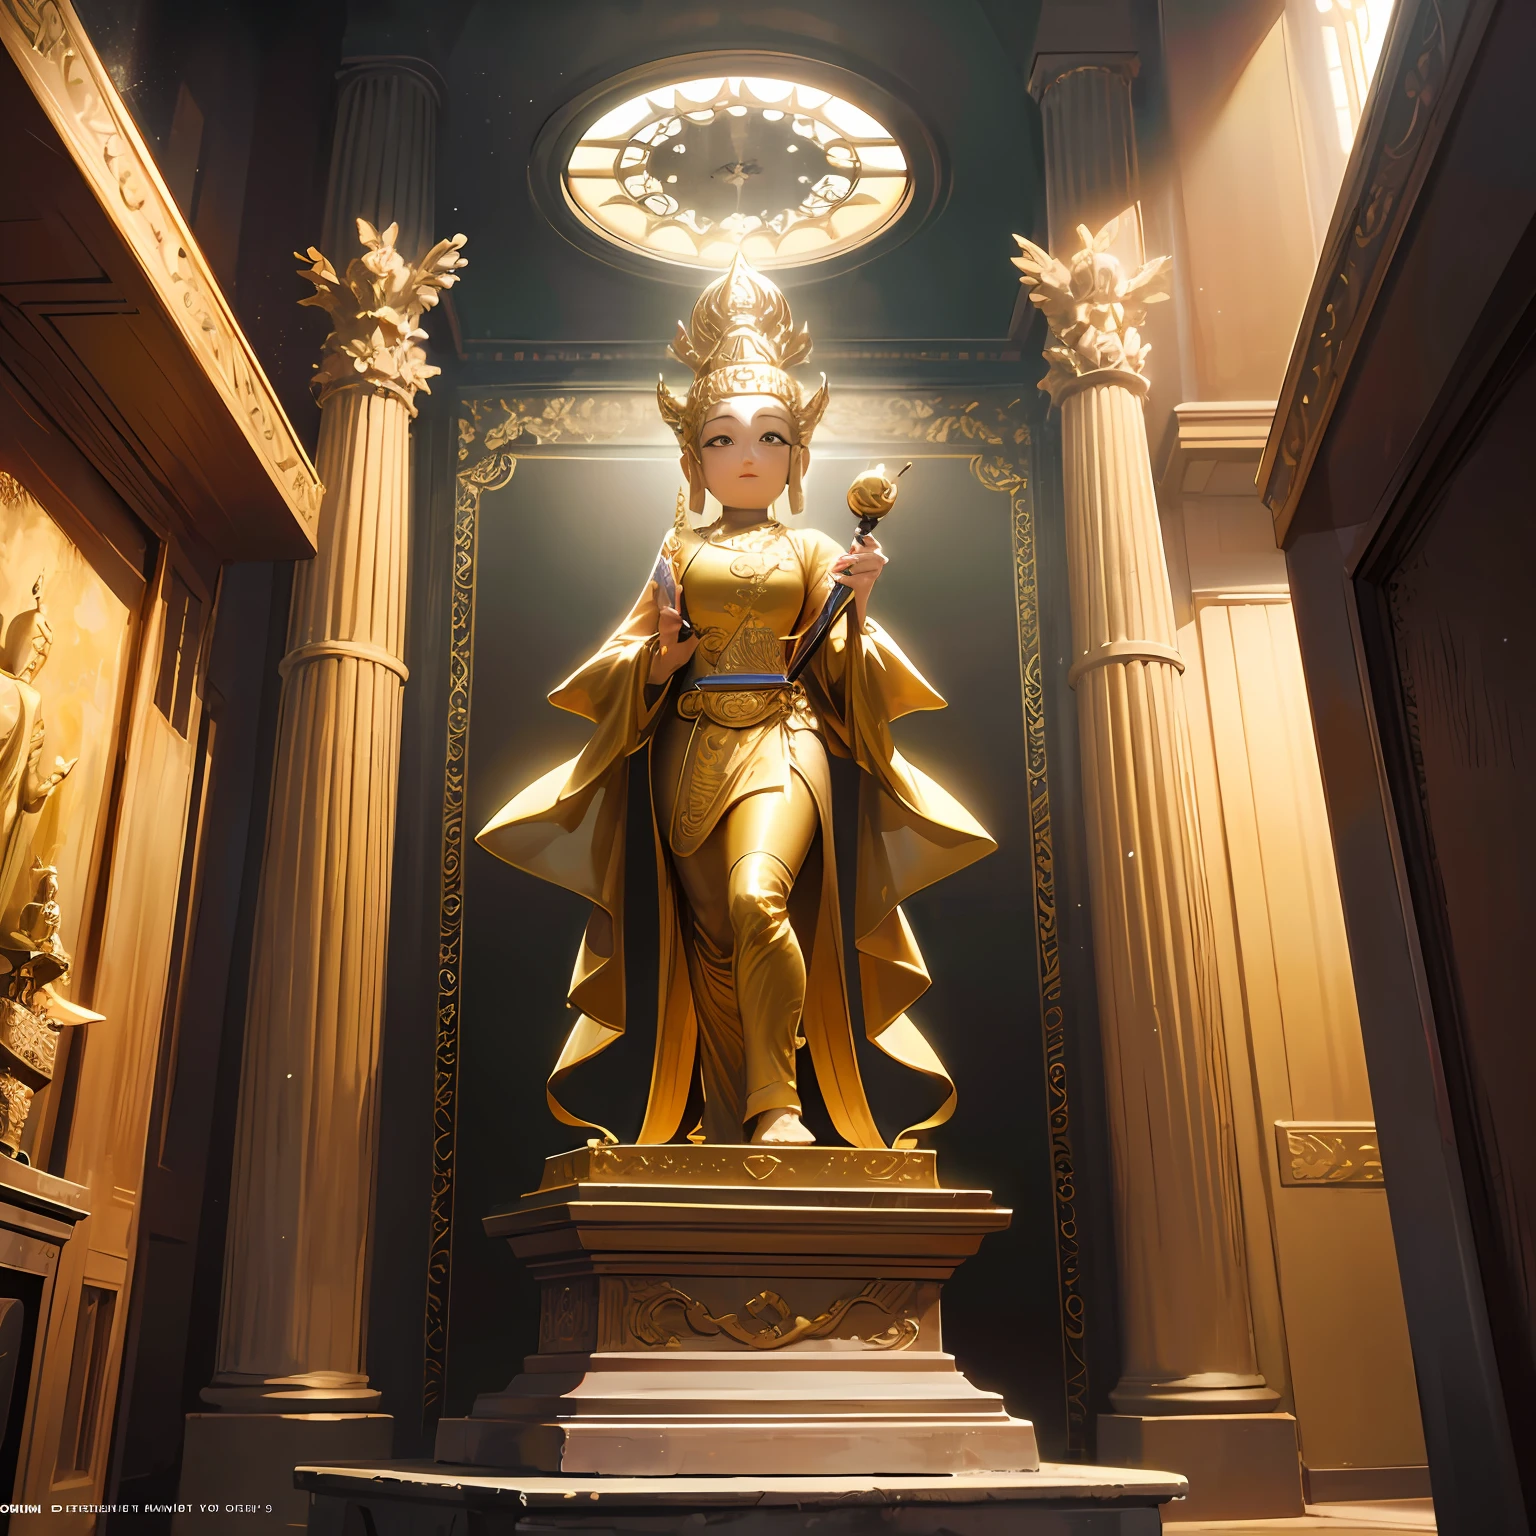 there is a статуя of a golden Snake on top of a building, a Buddhist Будда, снято на сони альфа 9, снято на камеру sony a7r, a статуя, Фотография сделана на Sony A7R., Будда, Фотография сделана на камеру Sony a7R., снято на сигму 2 0 мм f 1. 4, Красивое изображение, тайский храм, статуя, темный Млечный Путь на заднем плане, стоять, сюрреализм, кинематографическое освещение, Божий свет, подсветка, Текстурированная кожа, супер деталь